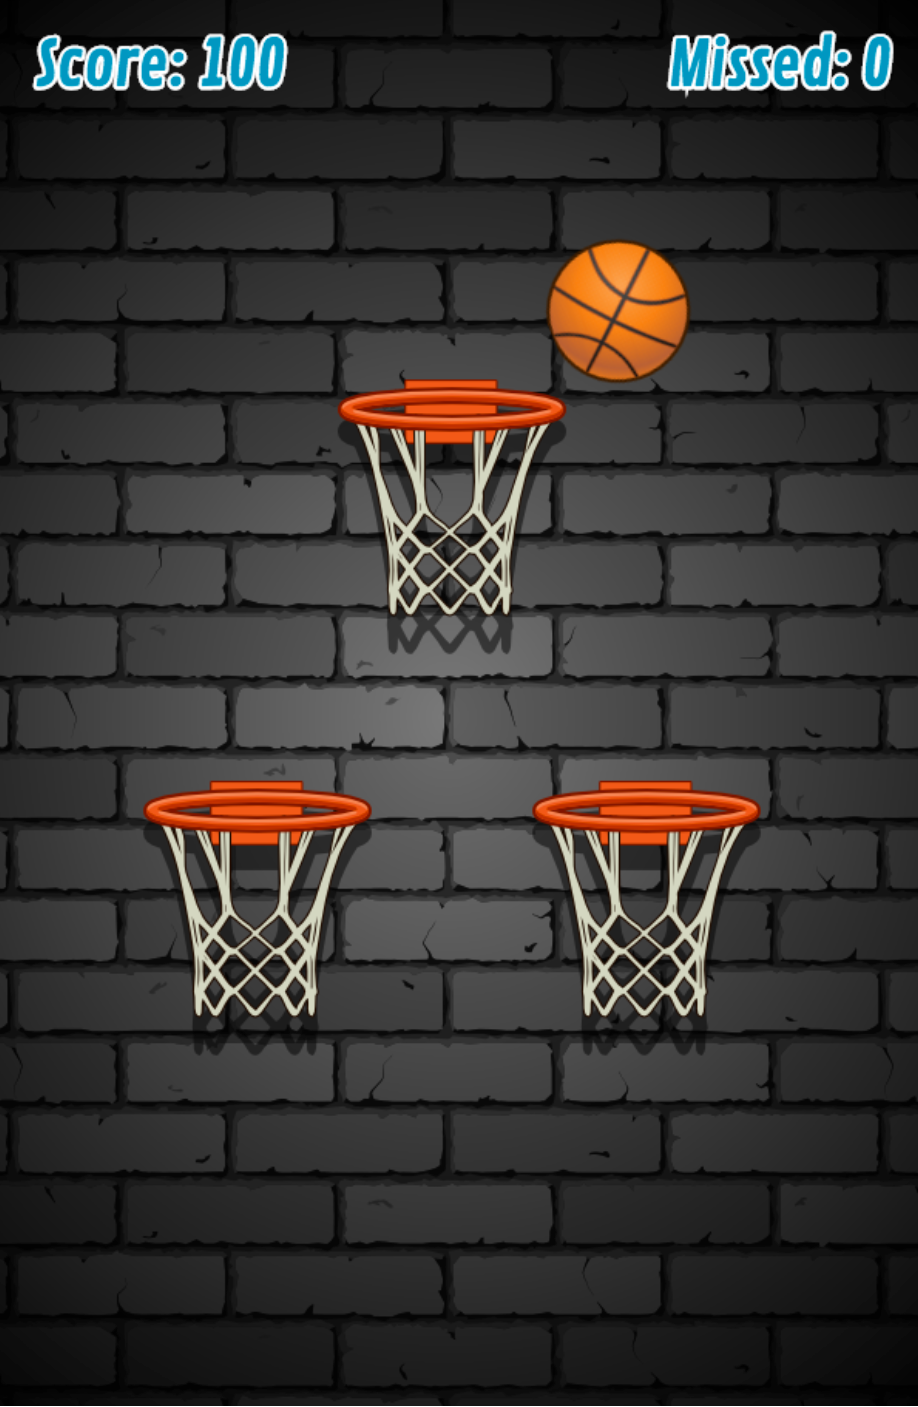 HTML5 Basketball Game